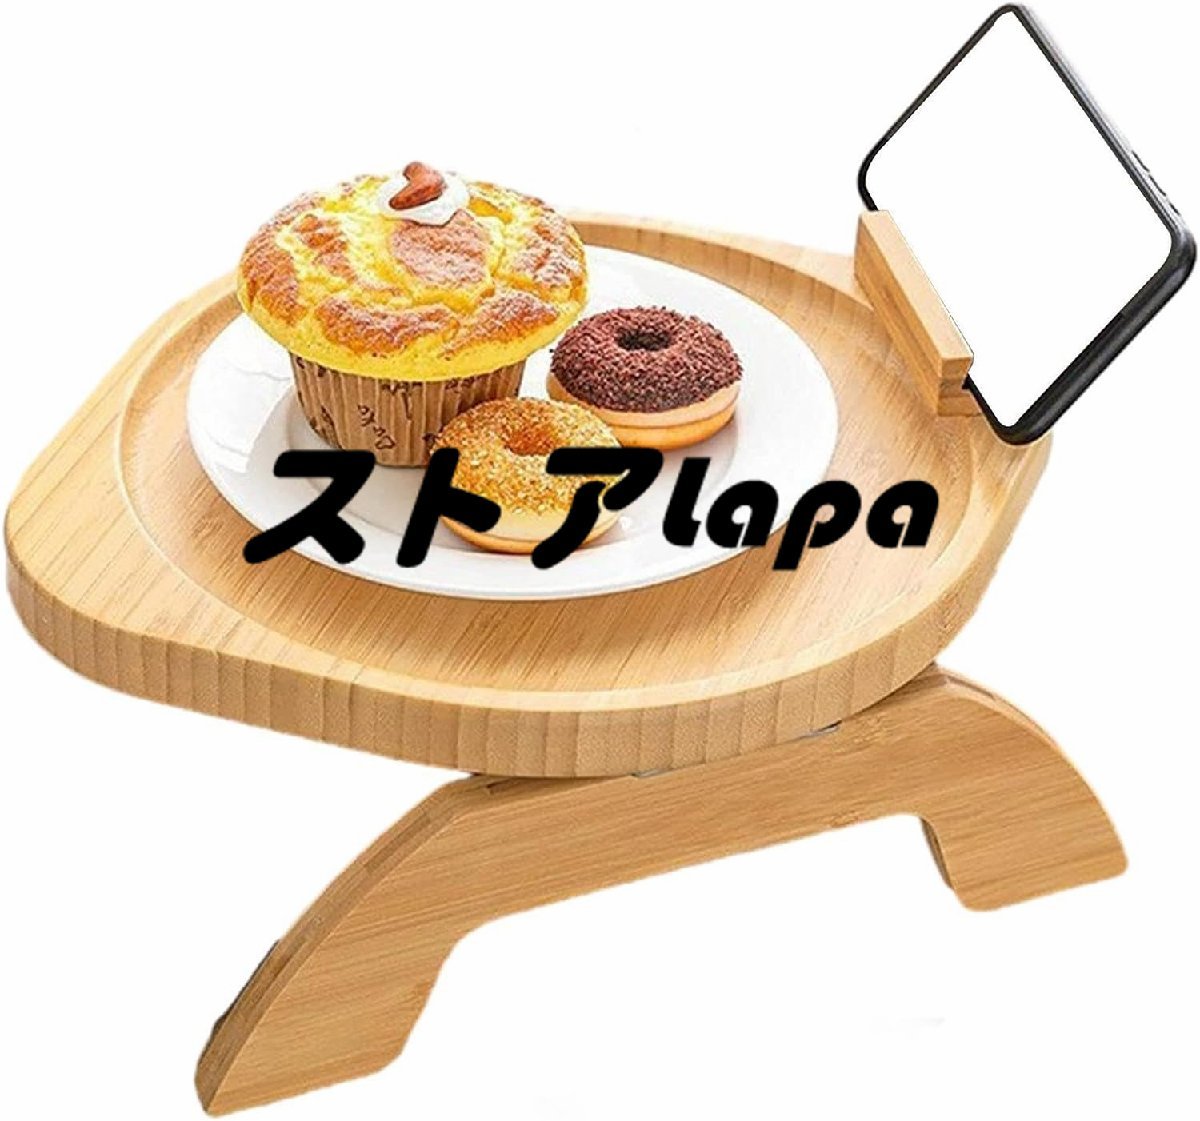 ソファアームトレイテーブル 竹製ソファアームレストトレイ 360°回転サポート付き 軽食用の折りたたみ式アームレストテーブル q2638_画像7